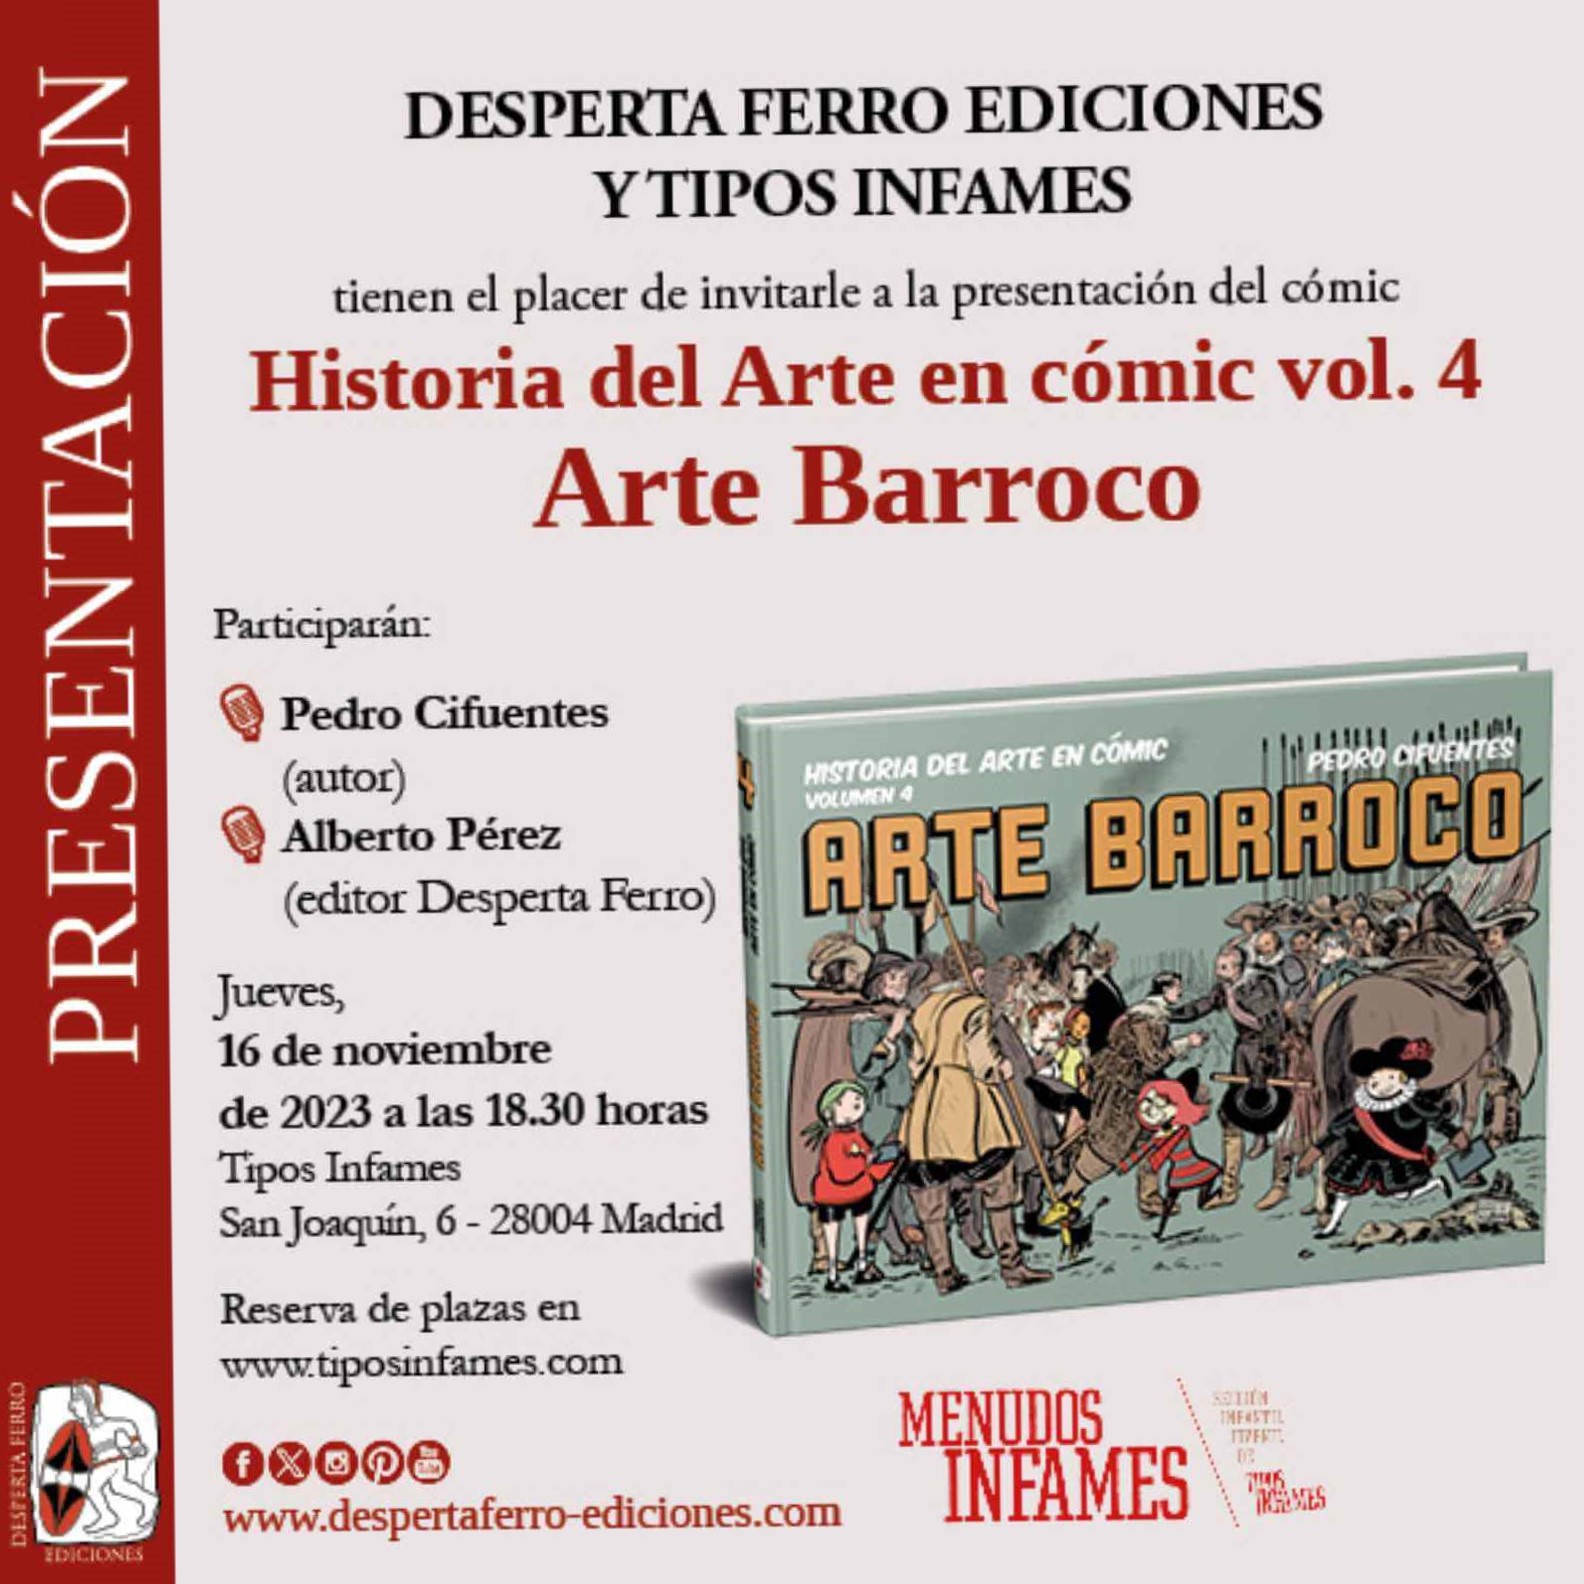 Historia del Arte en cómic. Arte Barroco, de Pedro Cifuentes